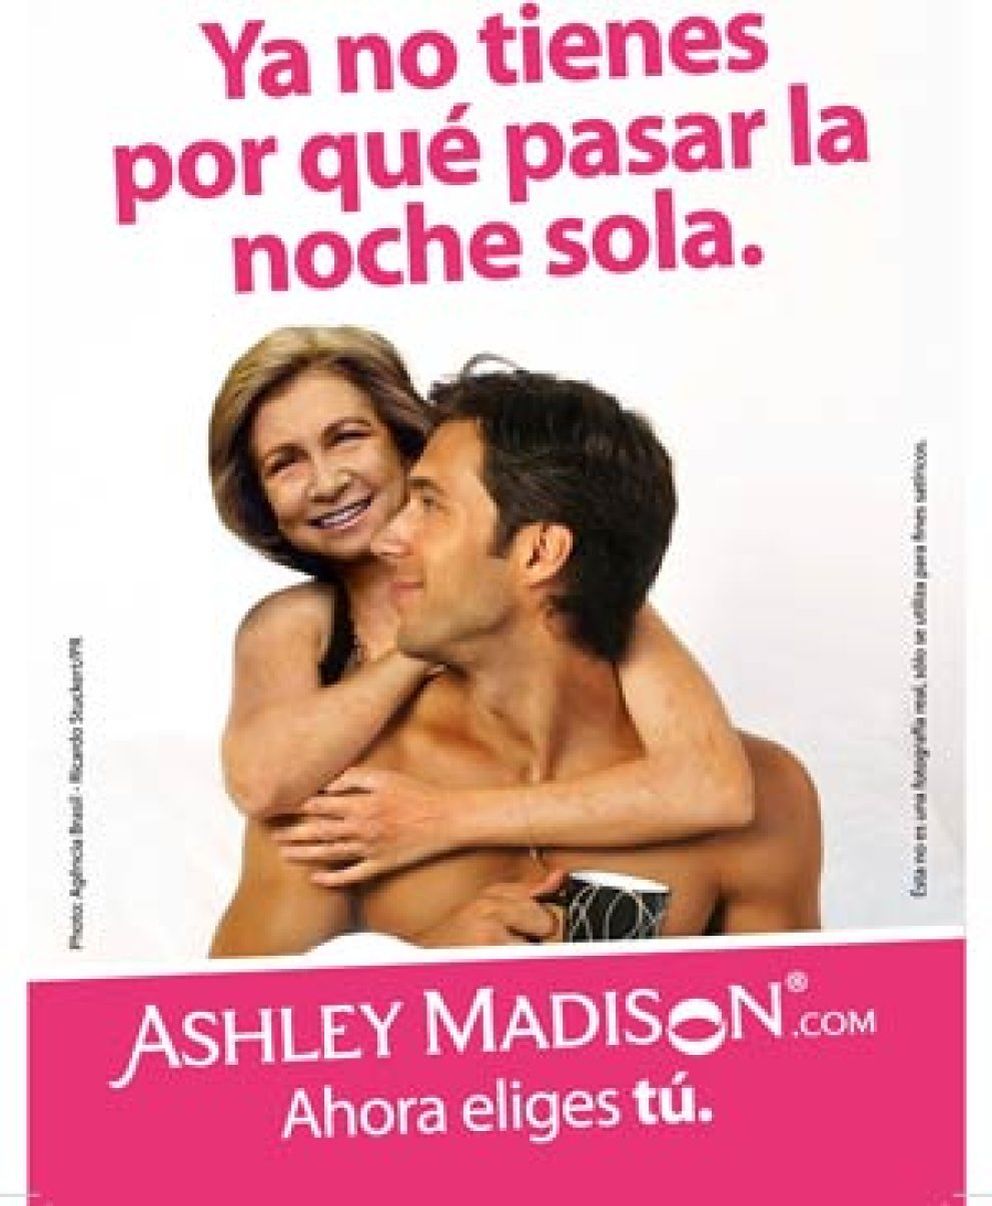 Foto: La publicidad de Ashley Madison daña el honor de la reina, según Autocontrol